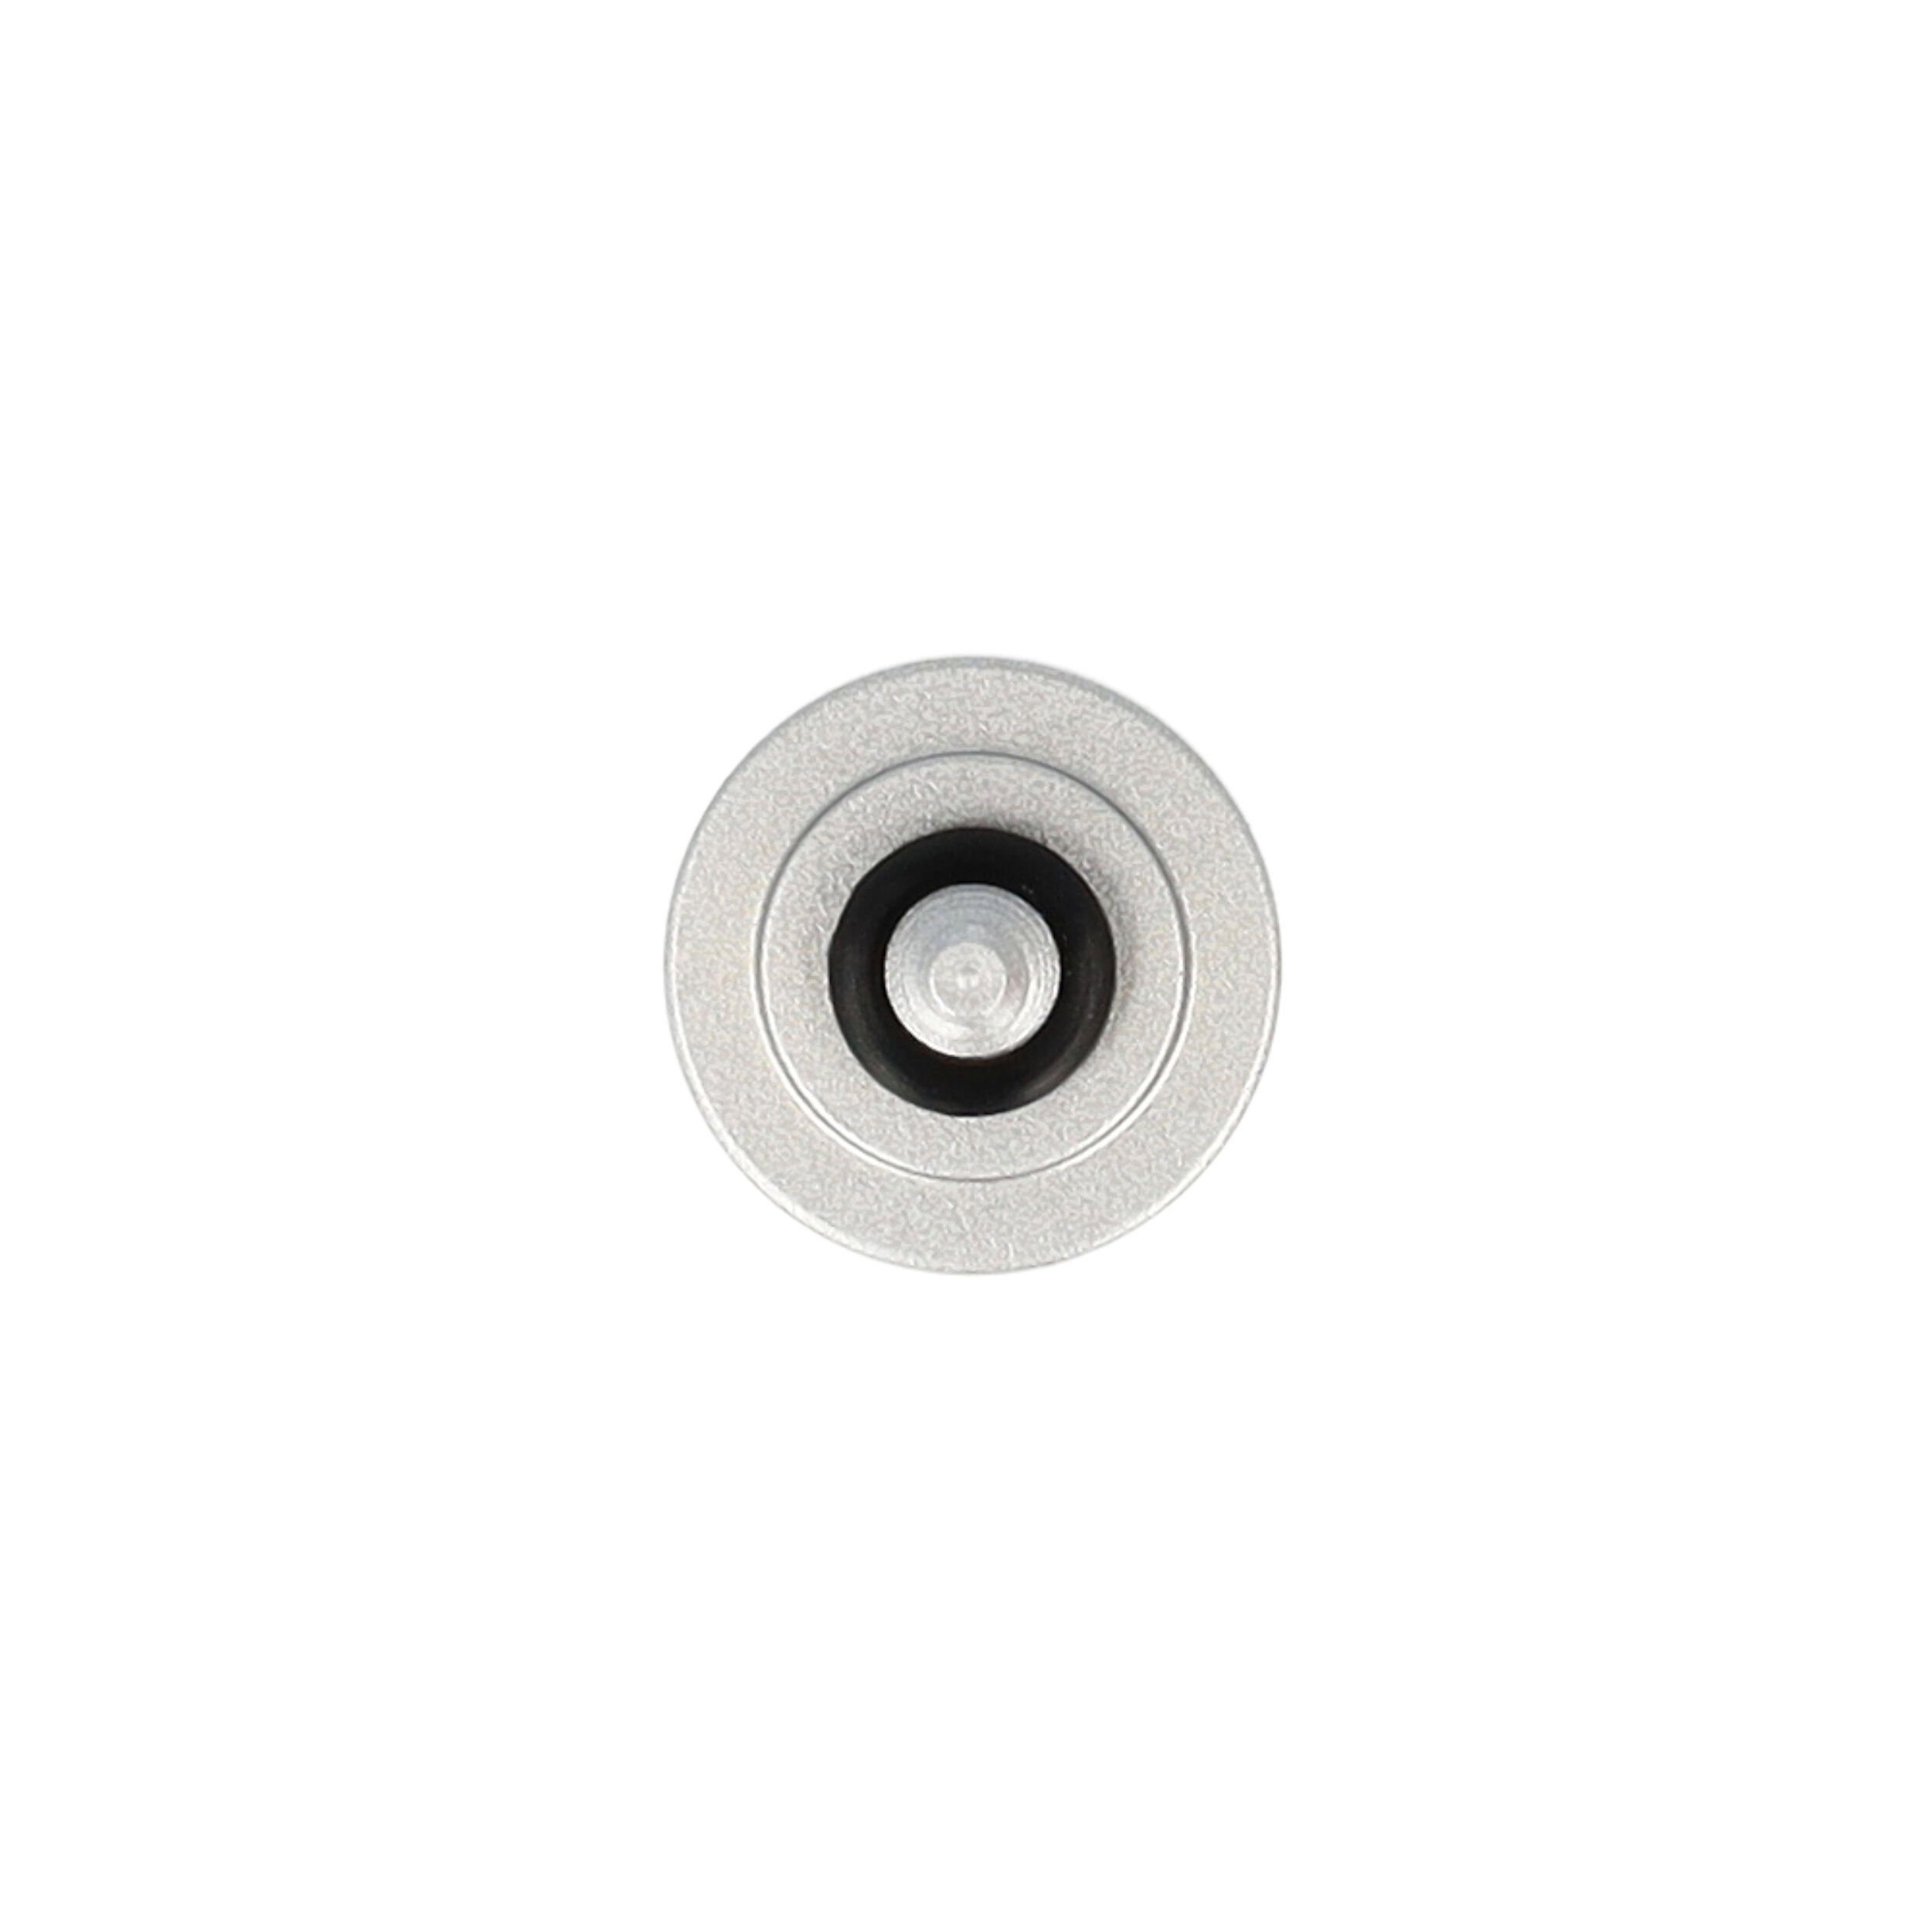 Leica M Kamera für vhbw 240 Kabel-Fernauslöser Foto Type passend / DSLR